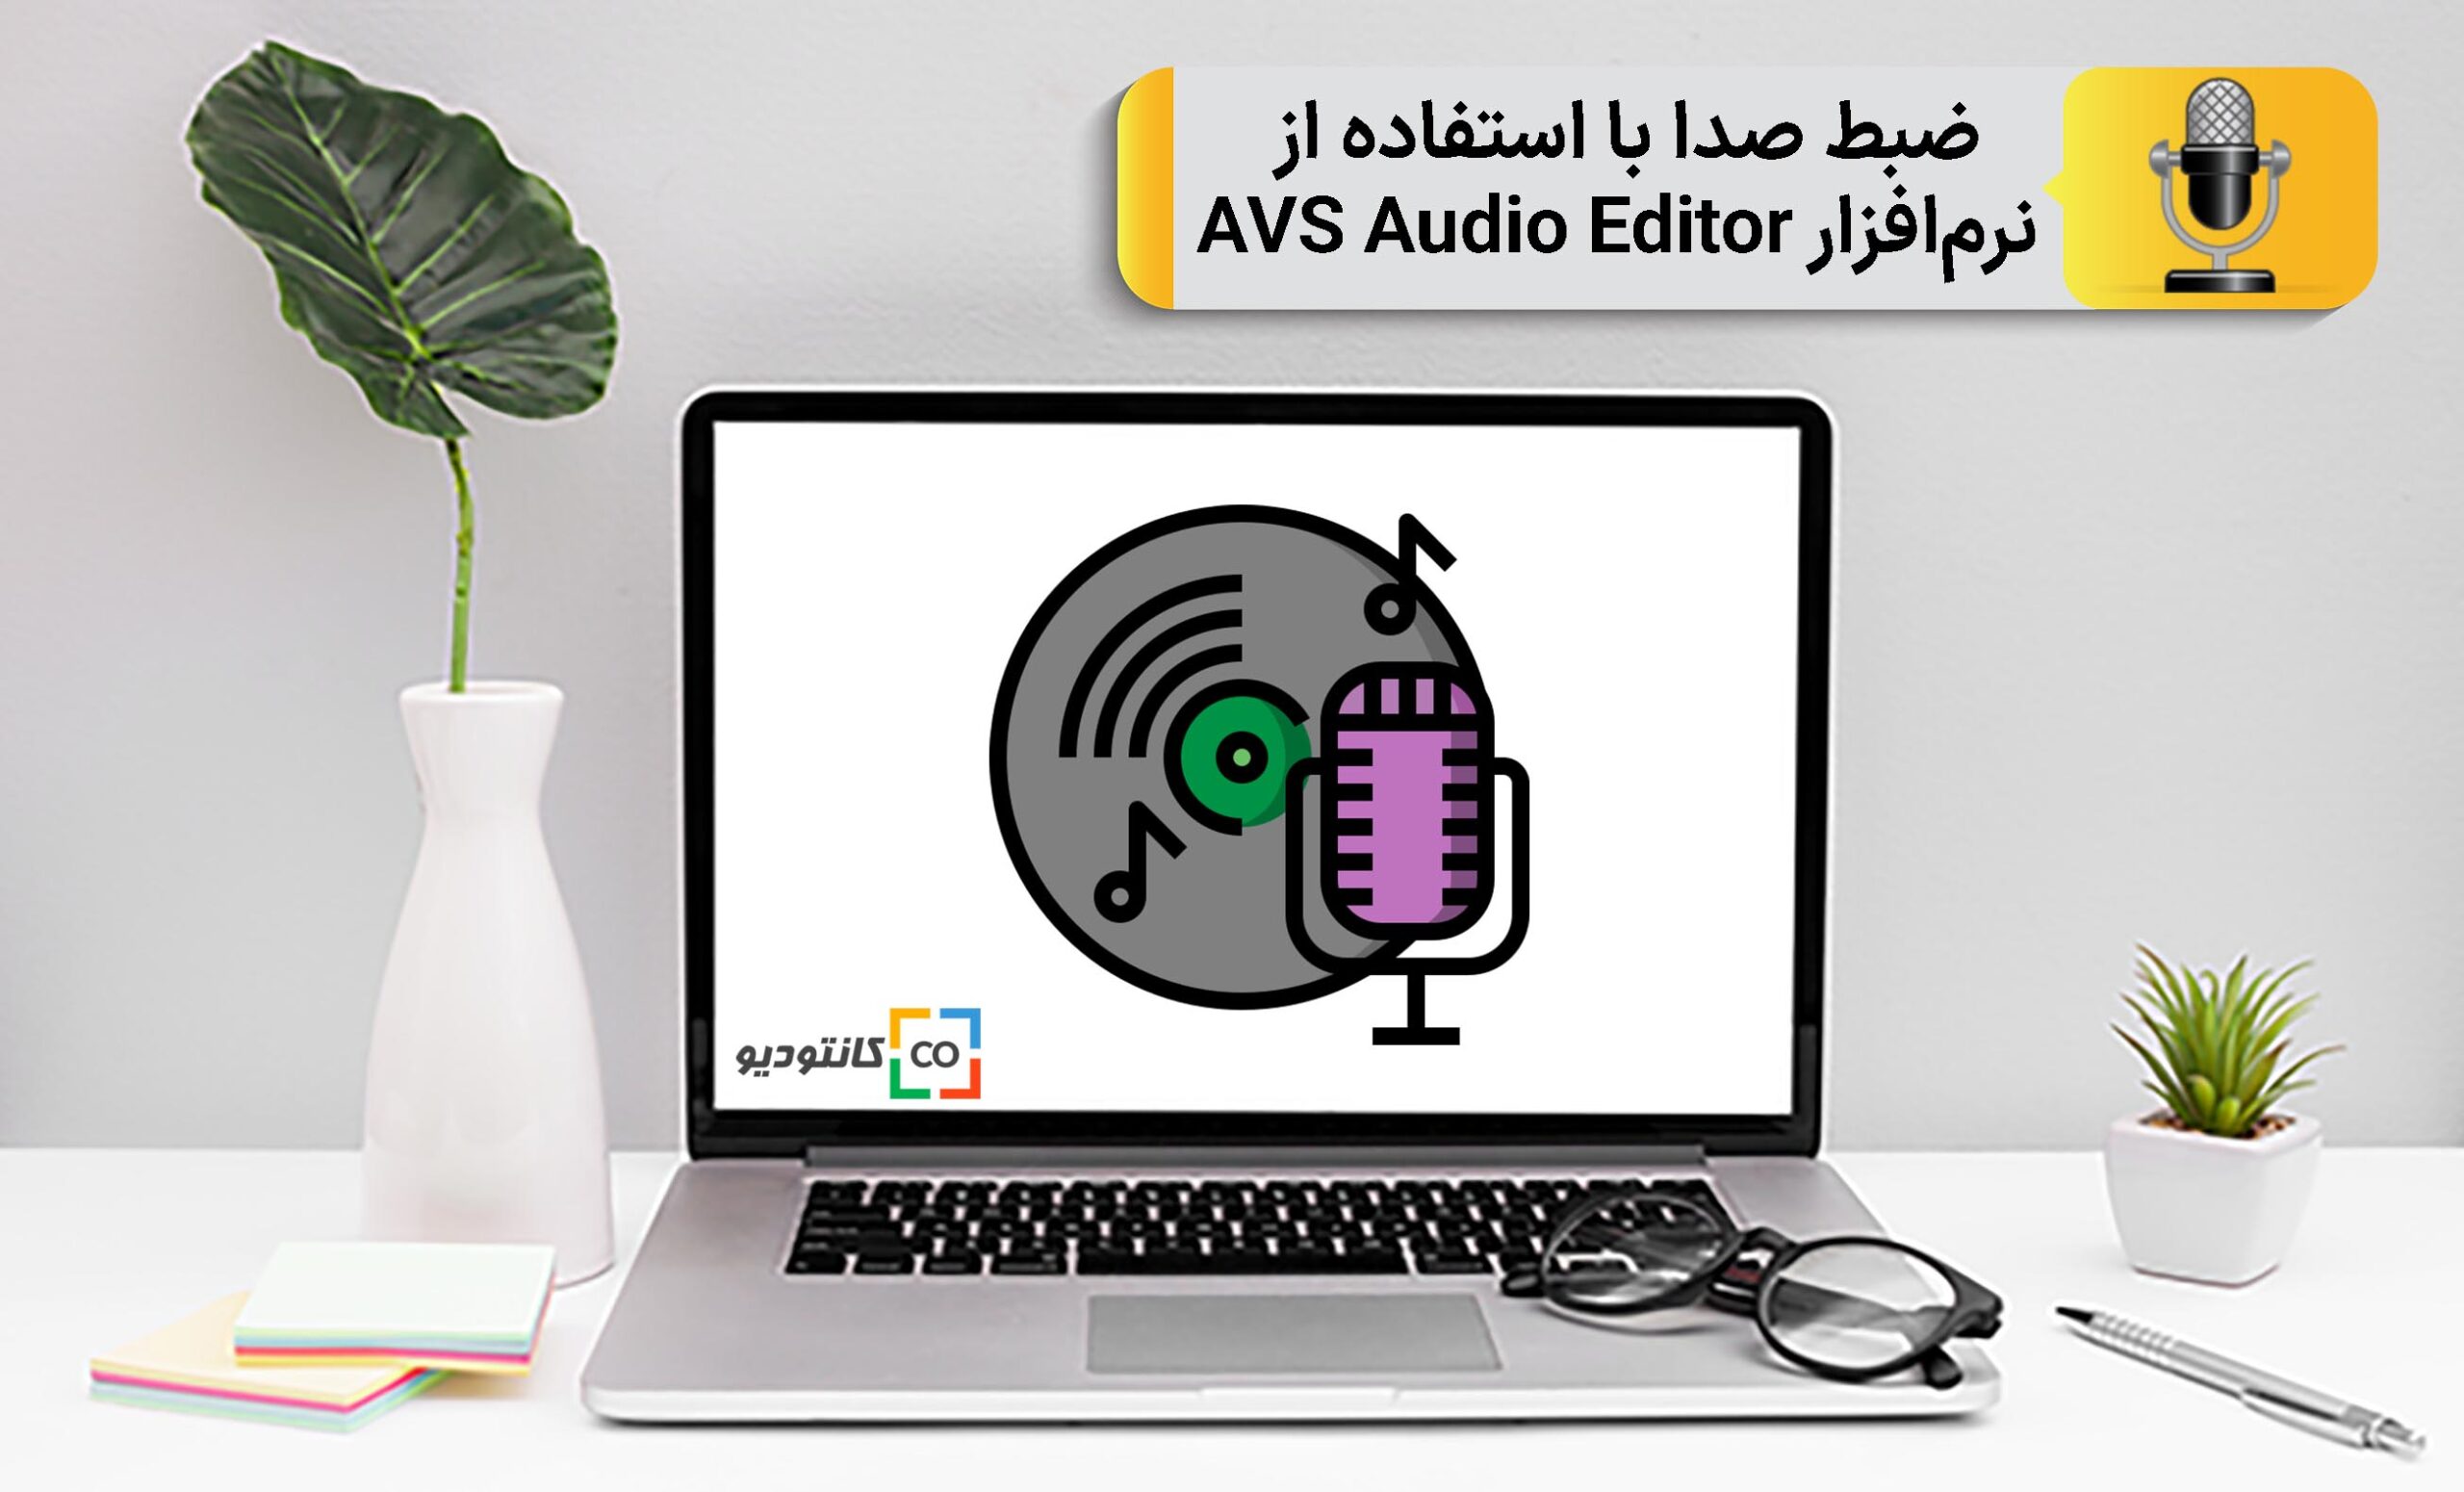 ضبط صدا با AVS Audio Editor